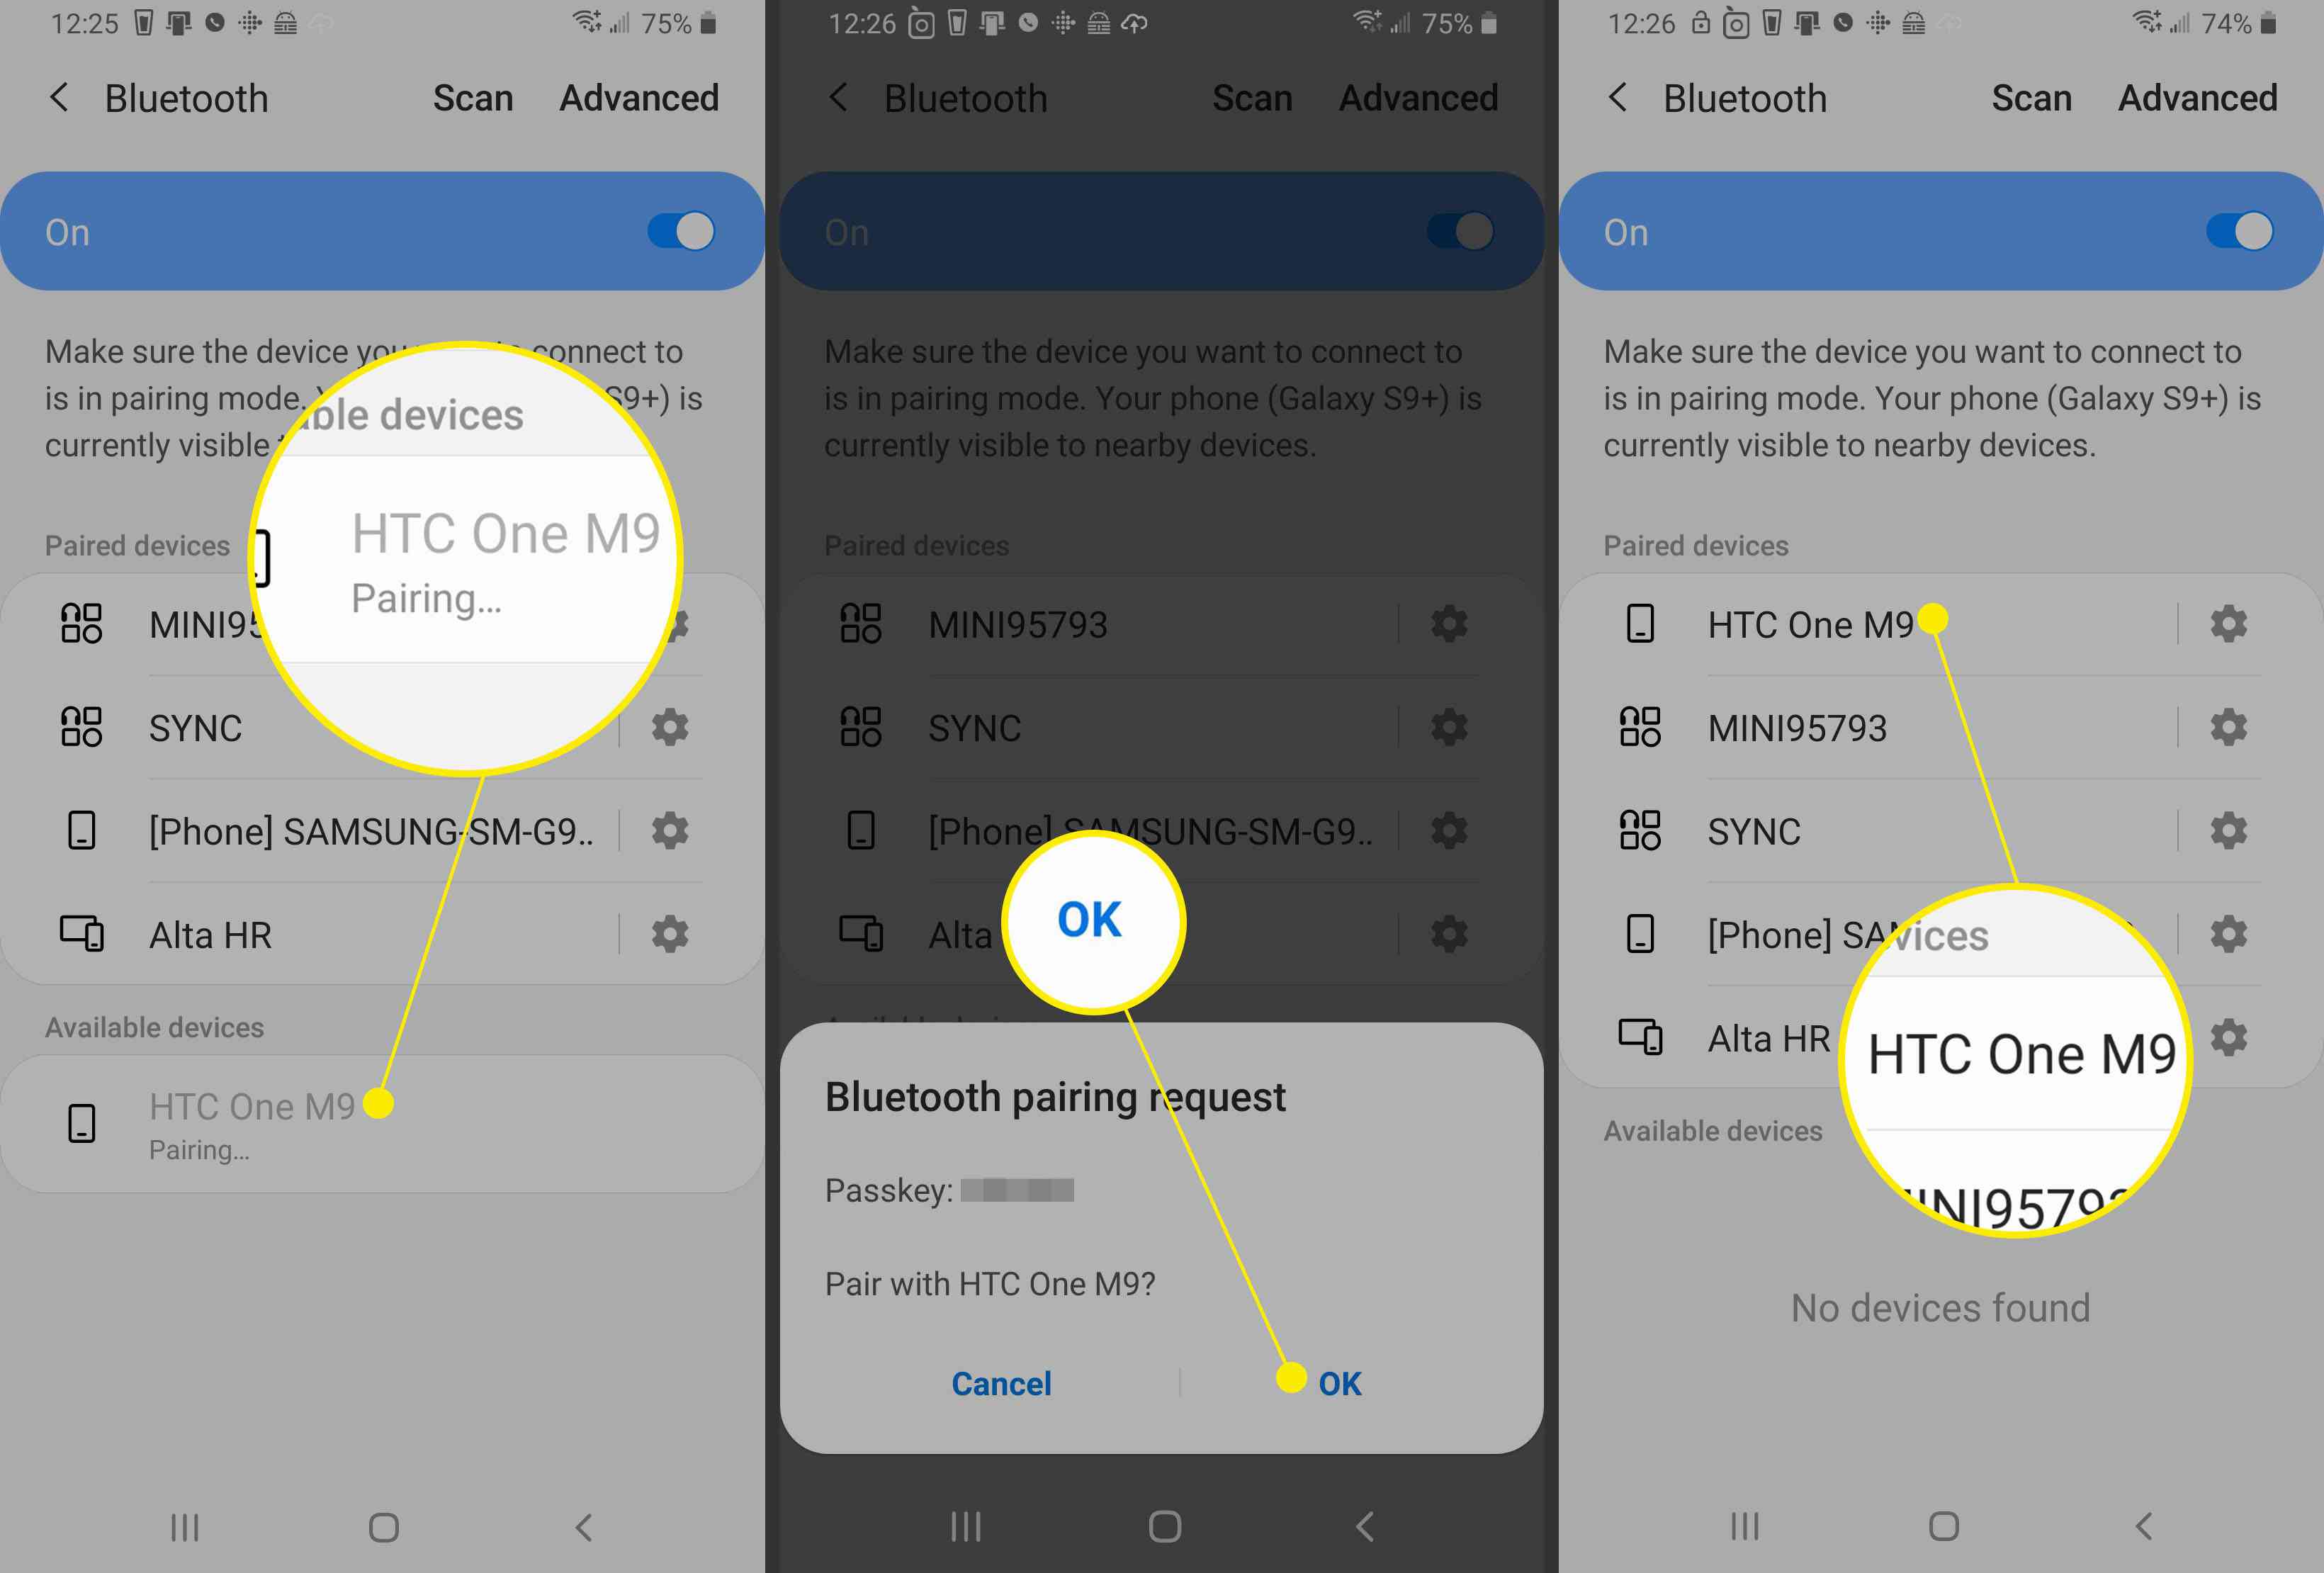 Schermafbeeldingen van een Android-apparaat die laten zien hoe u via Bluetooth verbinding kunt maken met een ander apparaat